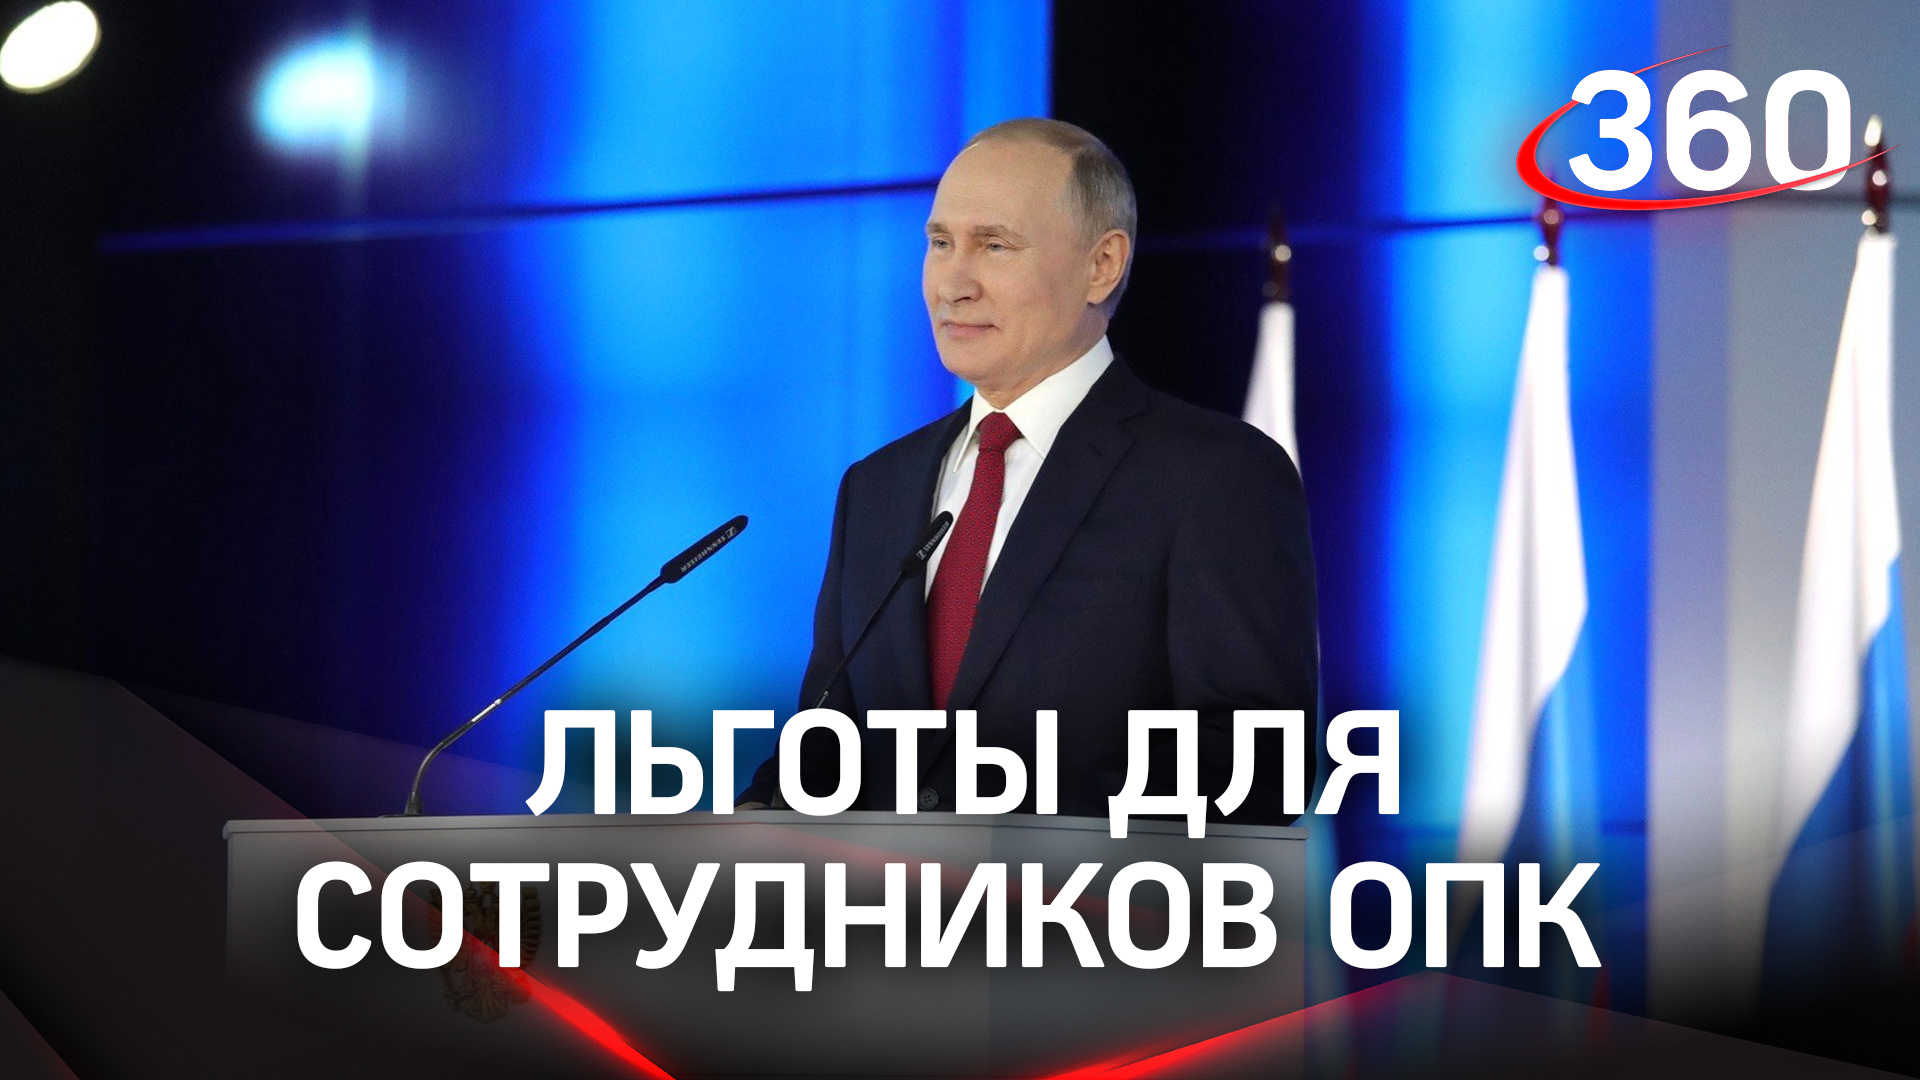 Владимир Путин: «Гарантии для трудовых коллективов будут укрепляться»